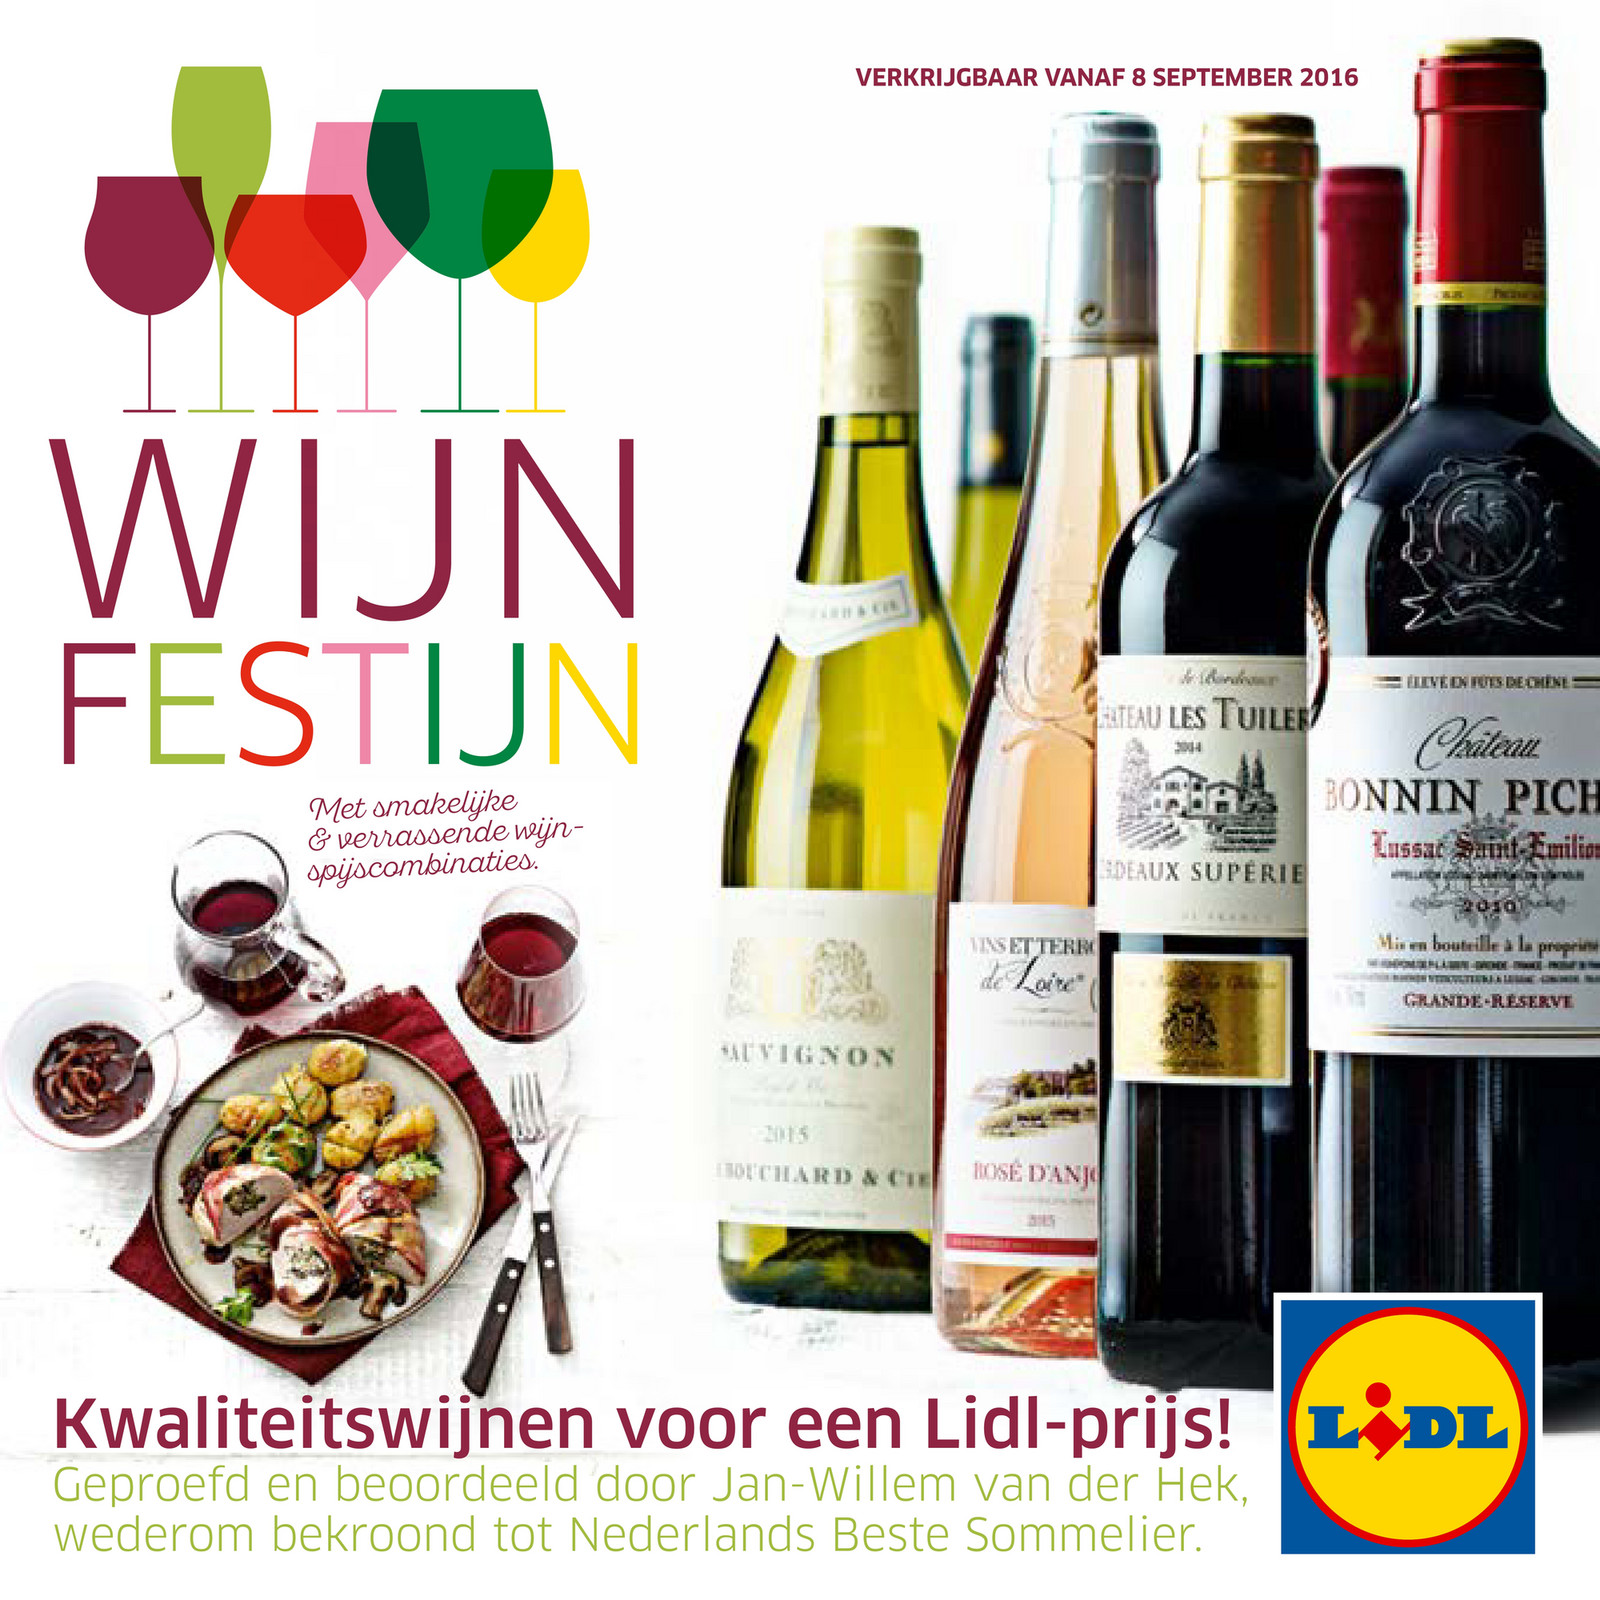 Folderaanbiedingen - Lidl wijn Wijnfestijn_2016 Pagina 24-25